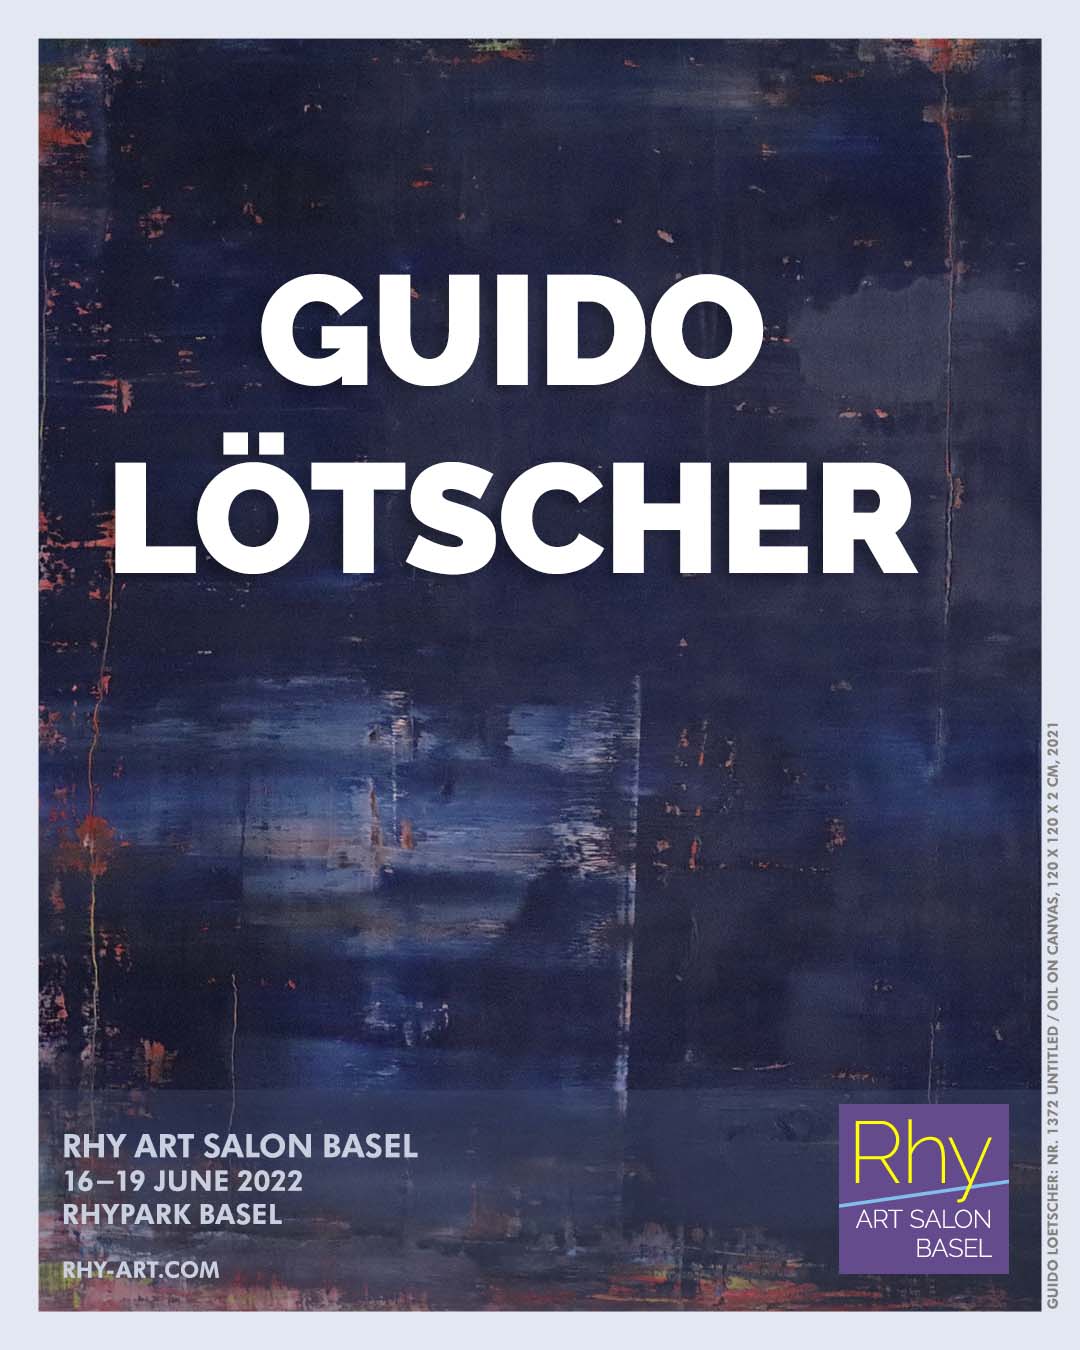 Guido Lötscher at Rhy Art Salon Basel 2022